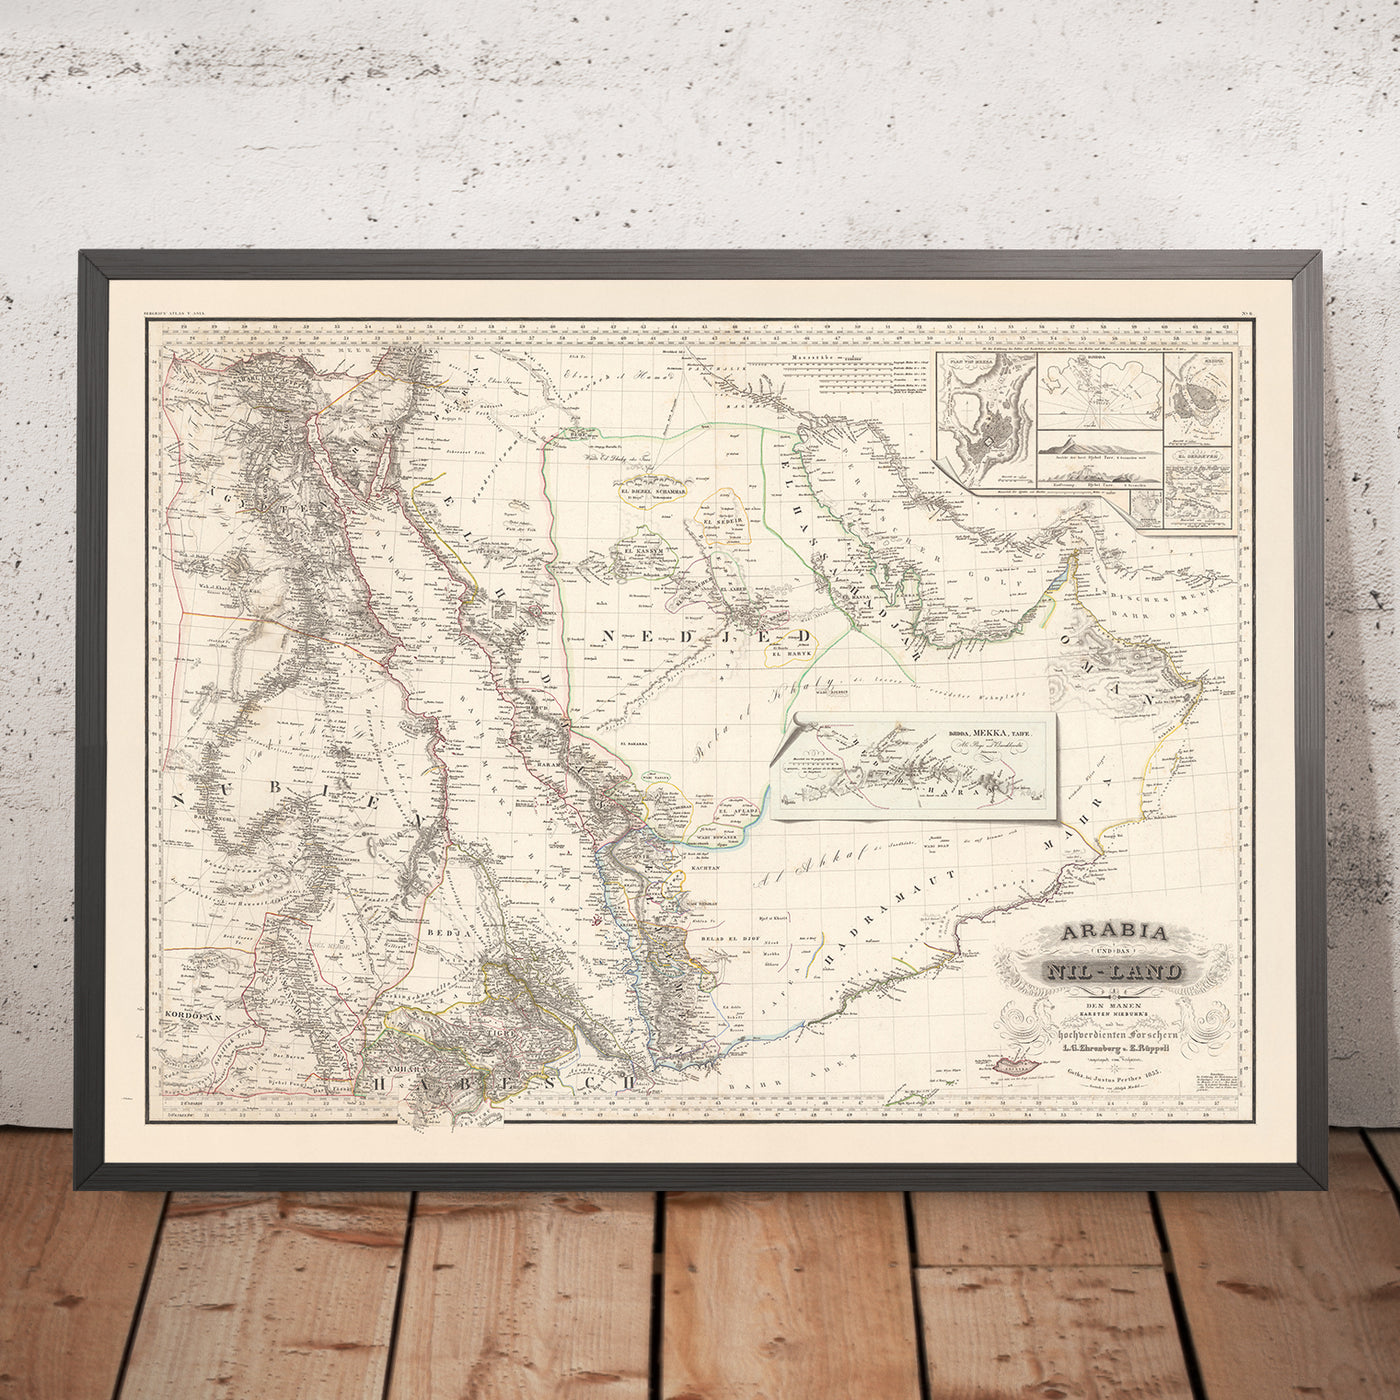 Ancienne carte rare de la péninsule arabique par Perthes, 1835 : Dubaï, Abu Dhabi, La Mecque, le Nil, la mer Rouge